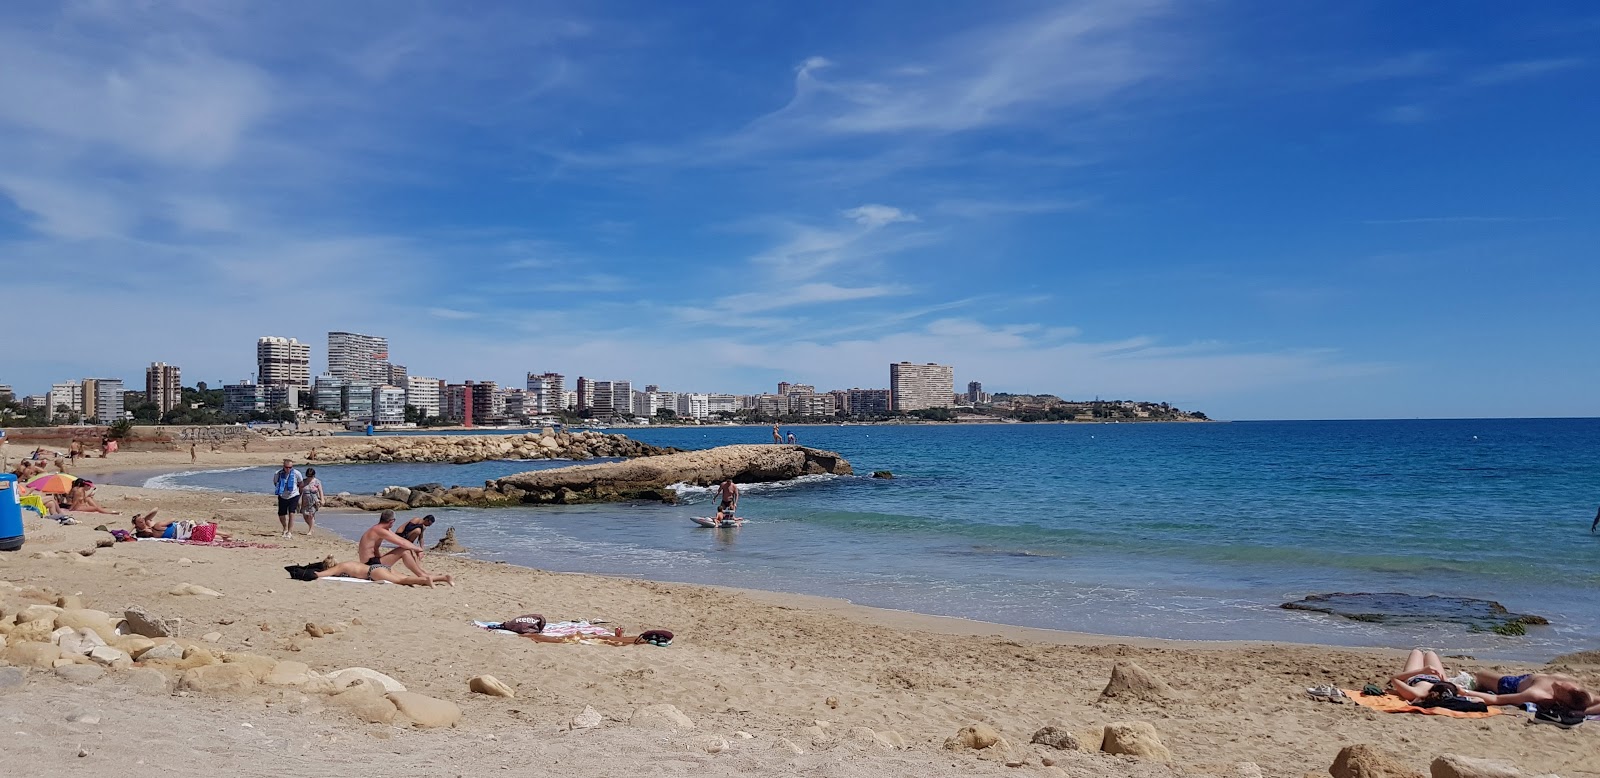 Calas de Alicante'in fotoğrafı siyah kum ve çakıl yüzey ile